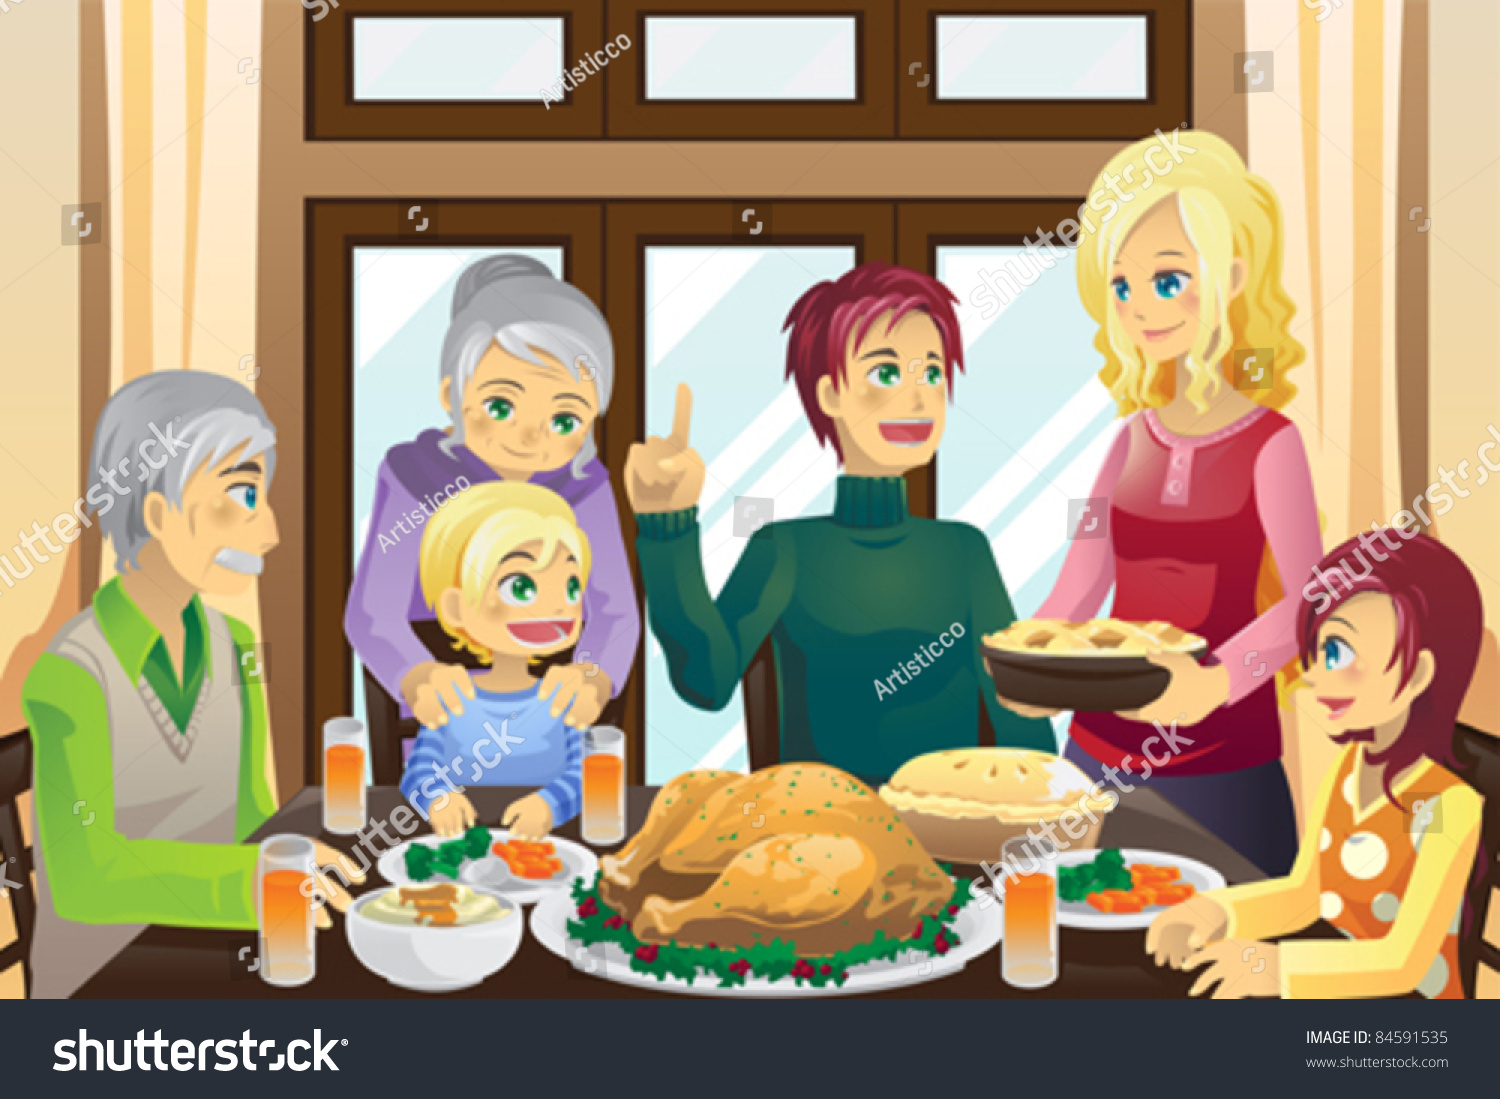 clipart of family eating dinner - photo #39